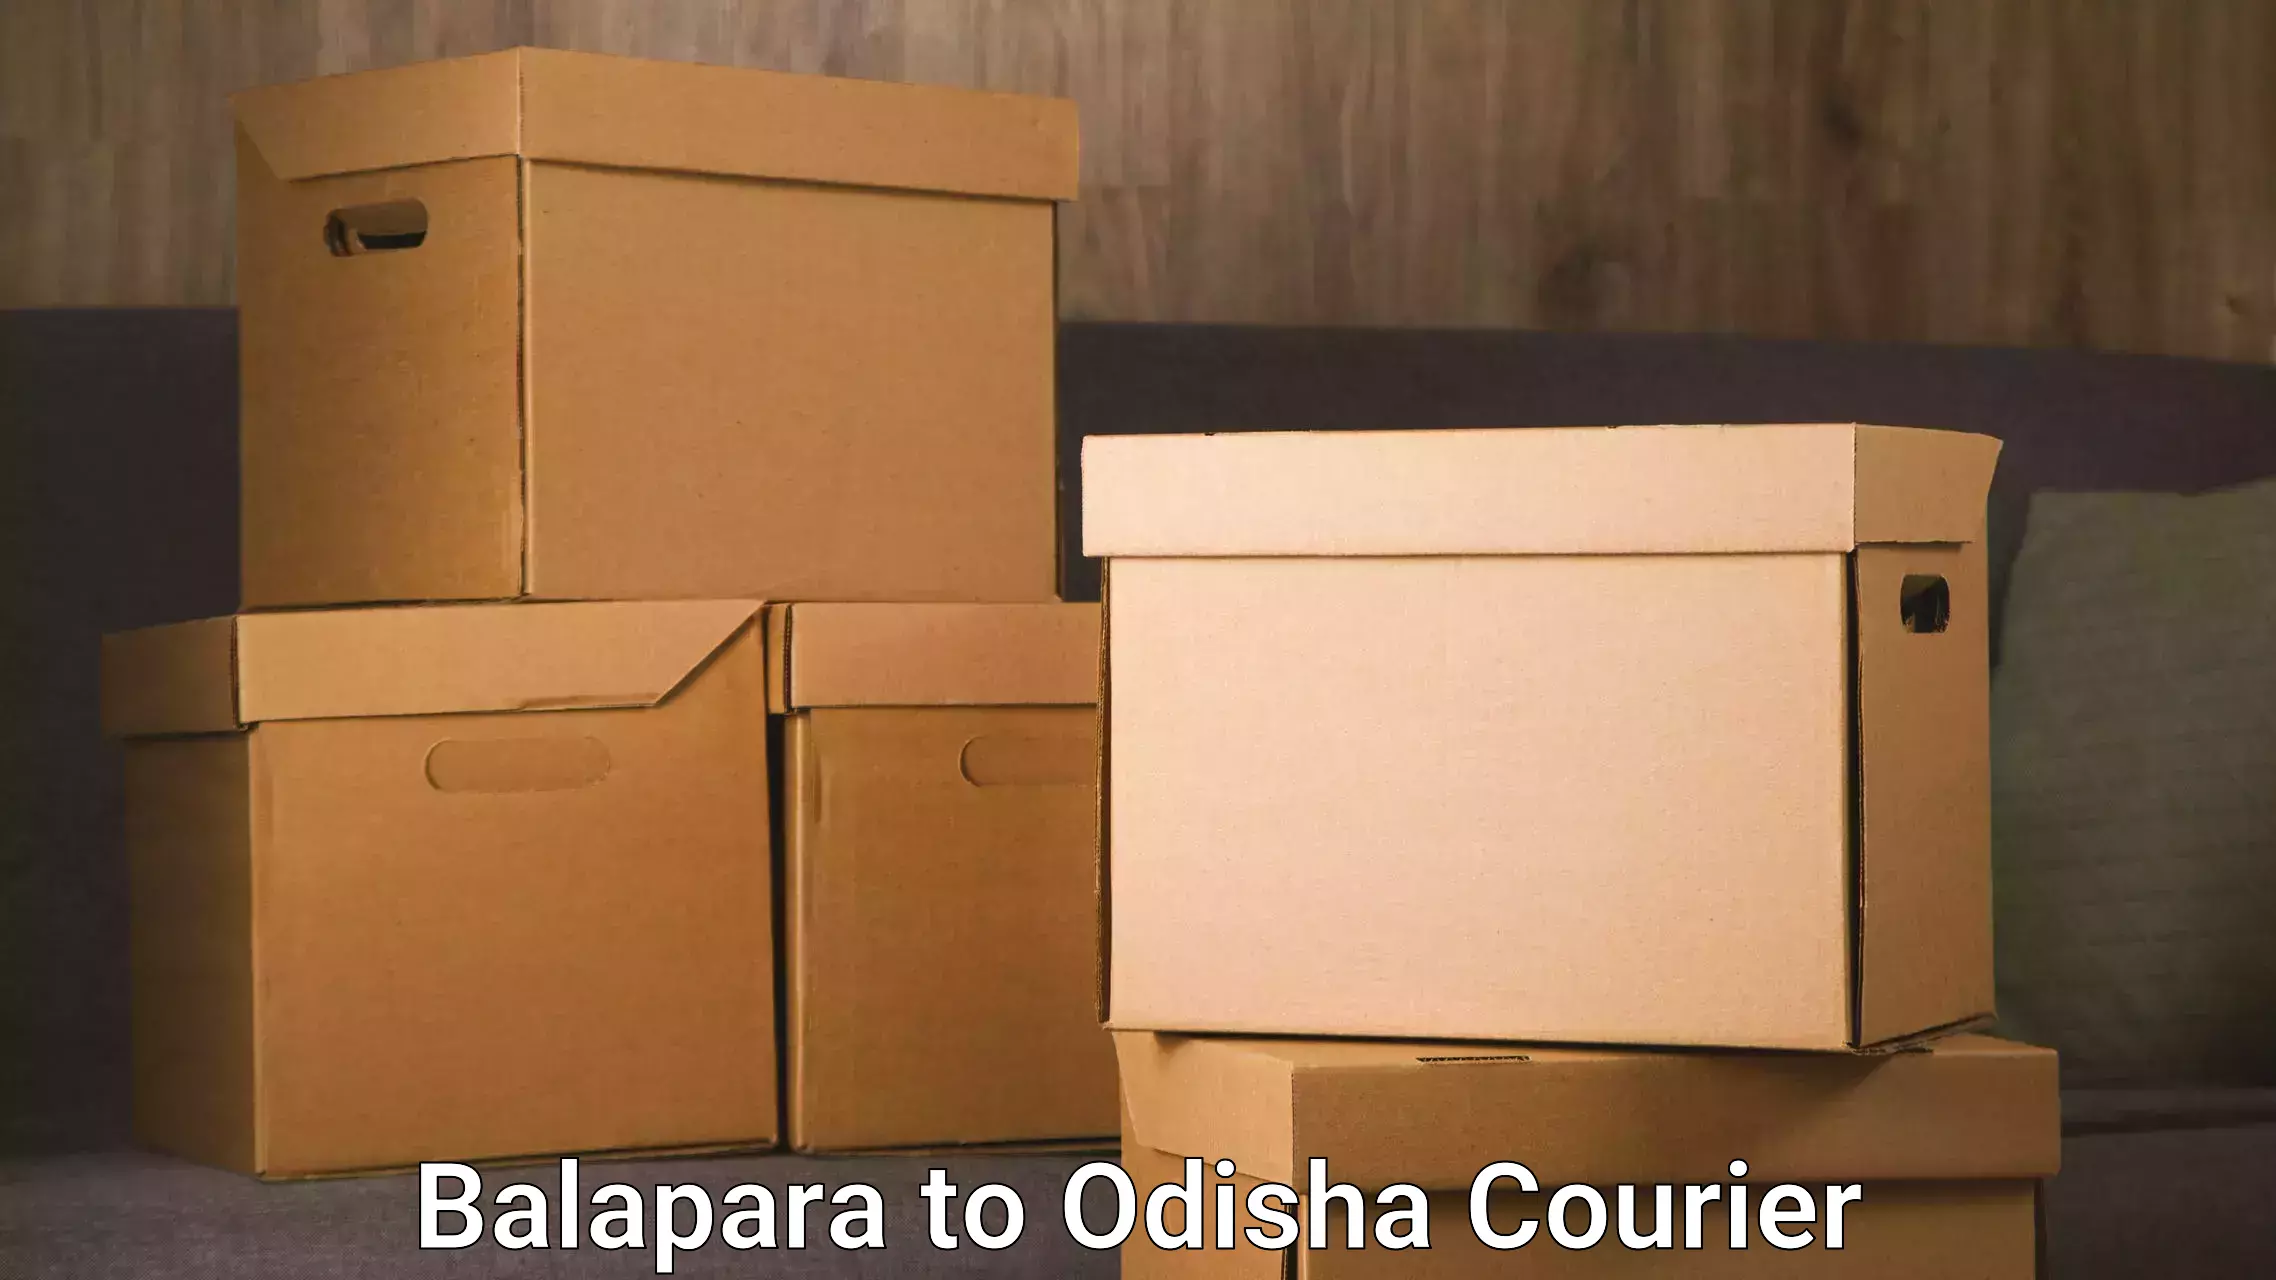 Expedited shipping methods Balapara to Riamal